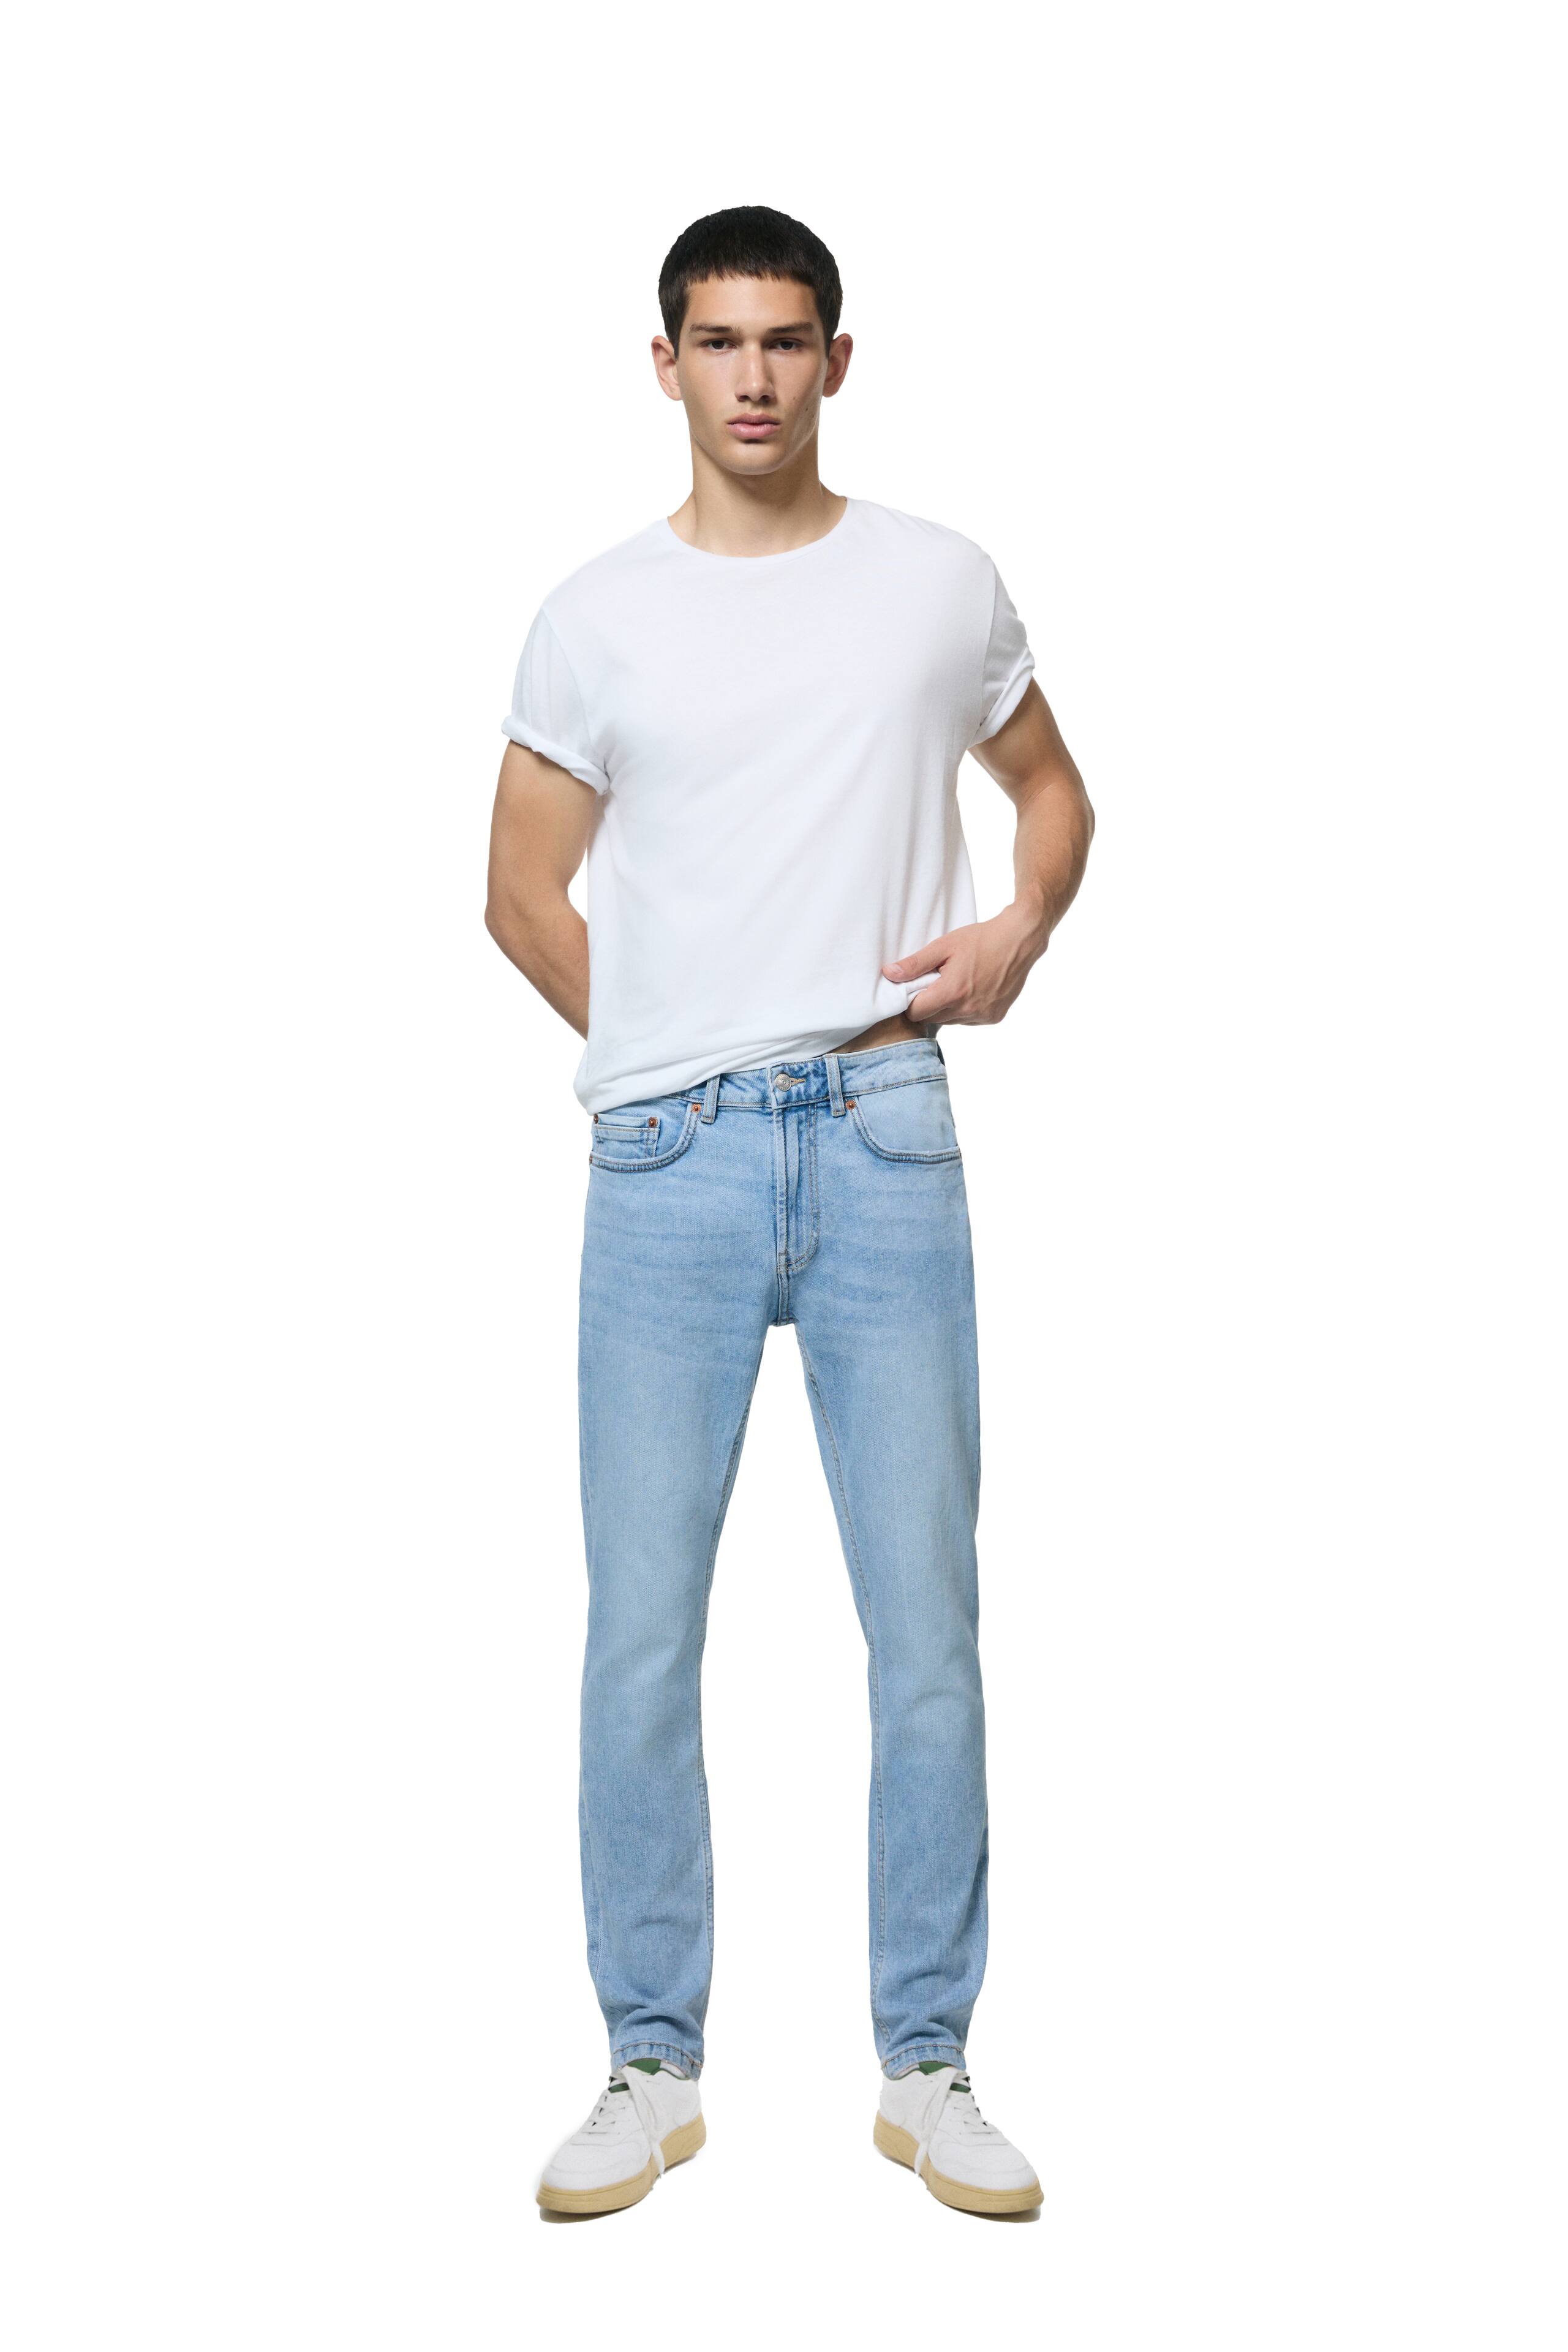 cintura alta nuevo diseño denim jean pantalones flacos en blanco